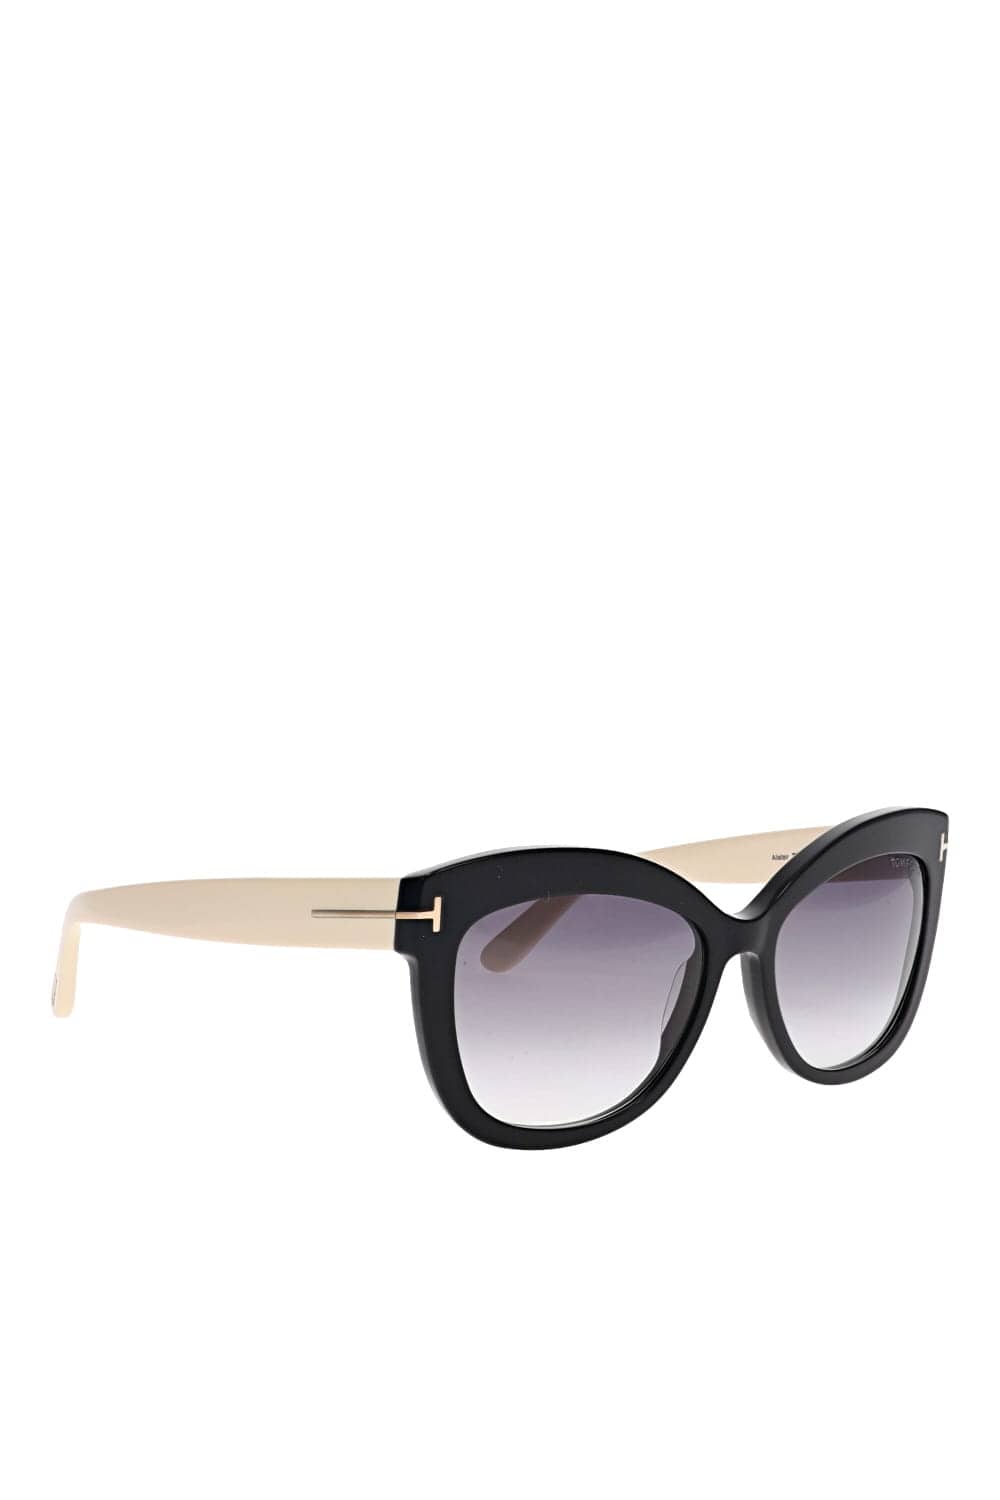 Tom Ford Eyewear FT0524 Shiny Ivory Sunglasses FT0524 Ivory/Smoke